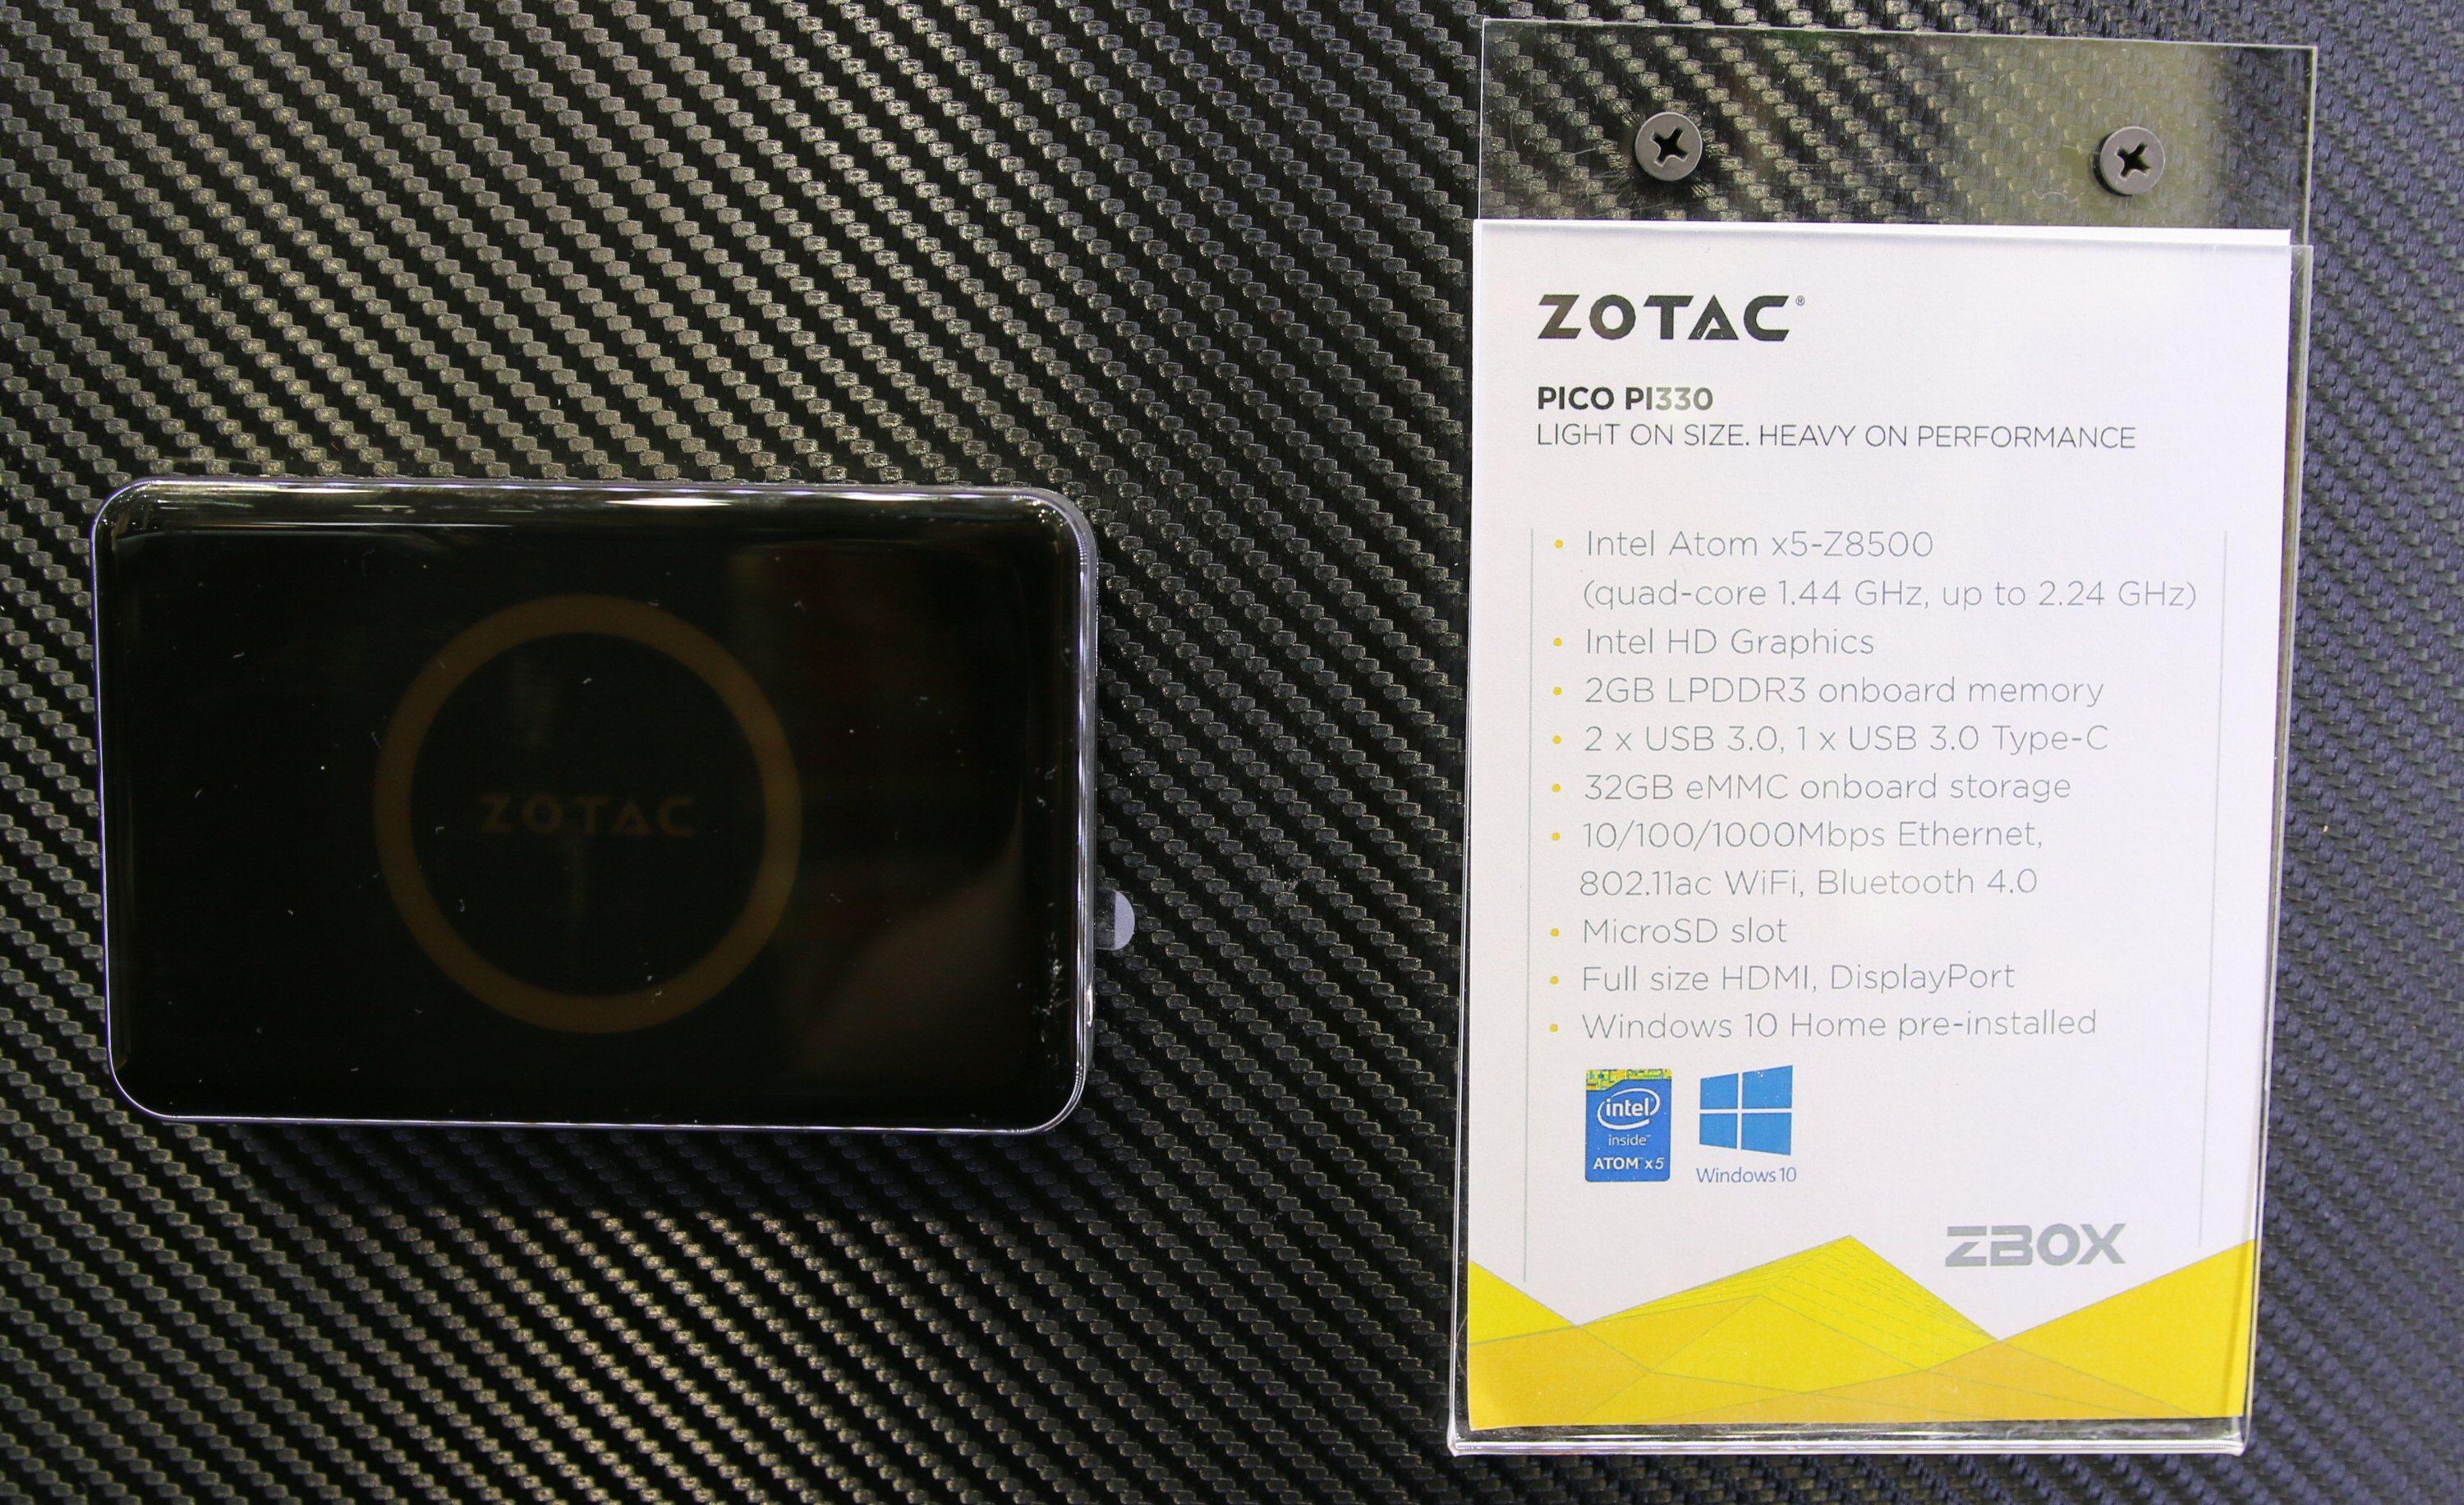 Den nette Zotac Zbox pico PI330.